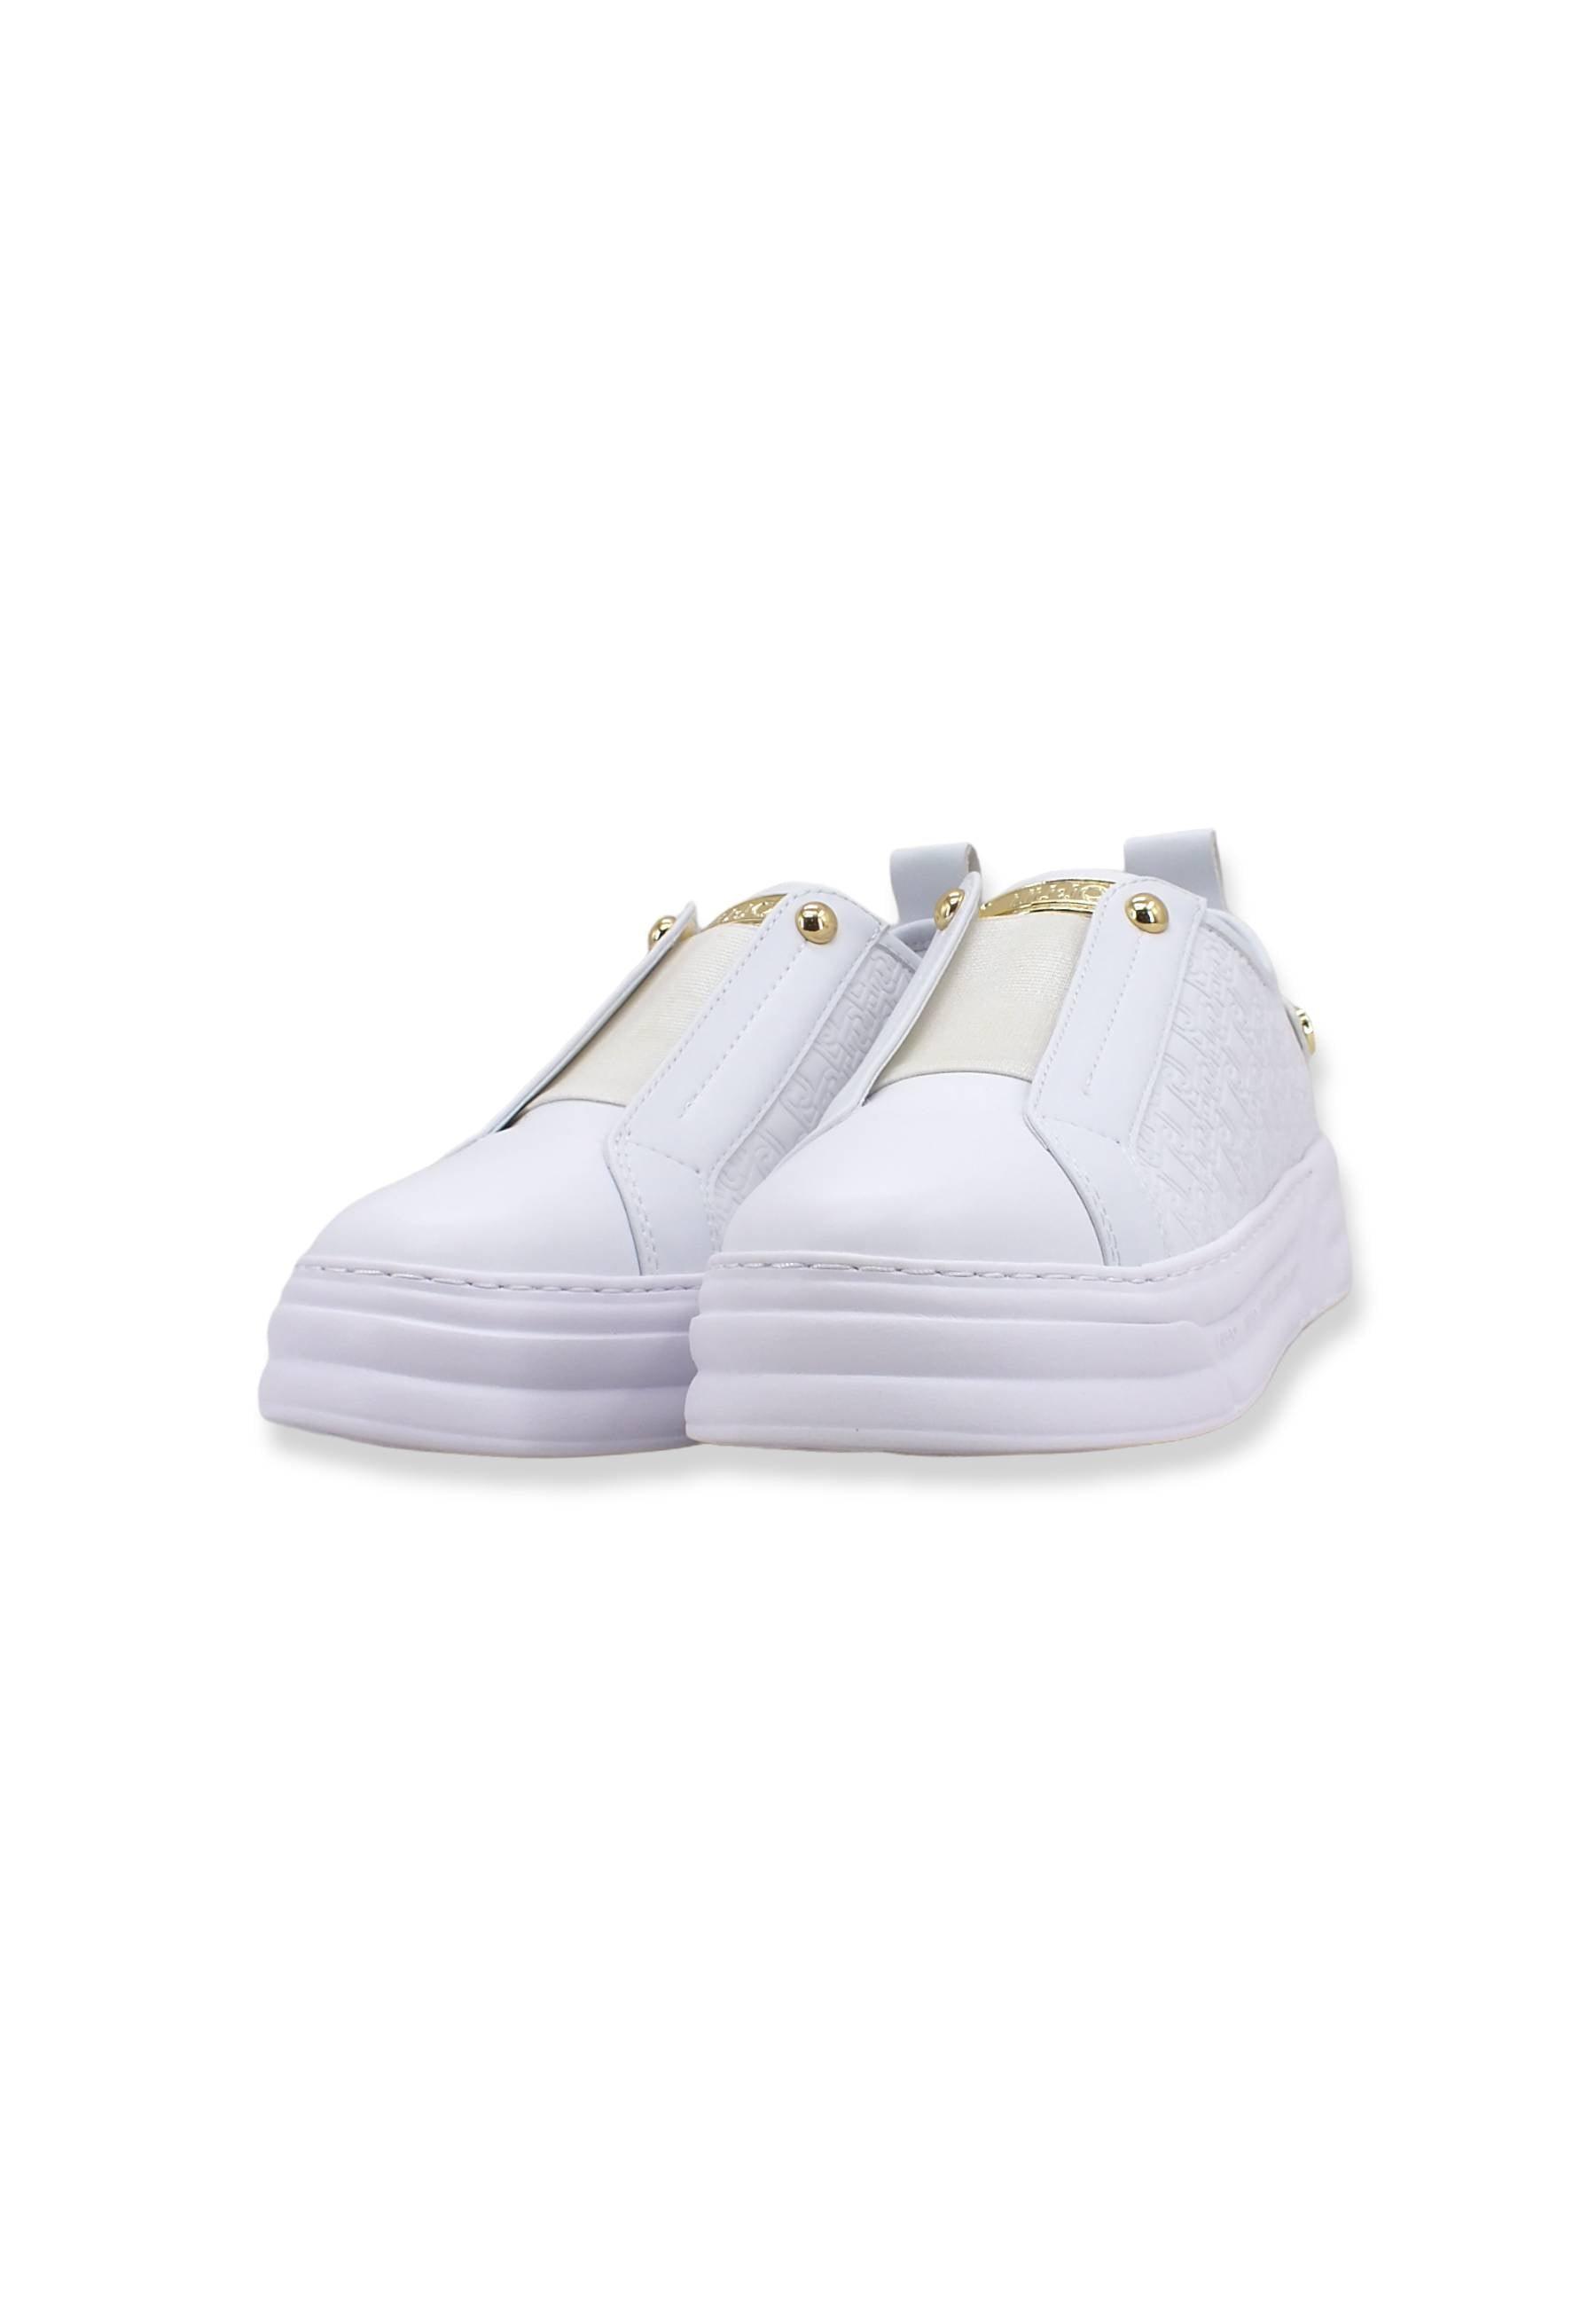 LIU JO Cleo 02 Sneaker Senza Lacci Platform Donna White BF2081PX144 - Sandrini Calzature e Abbigliamento